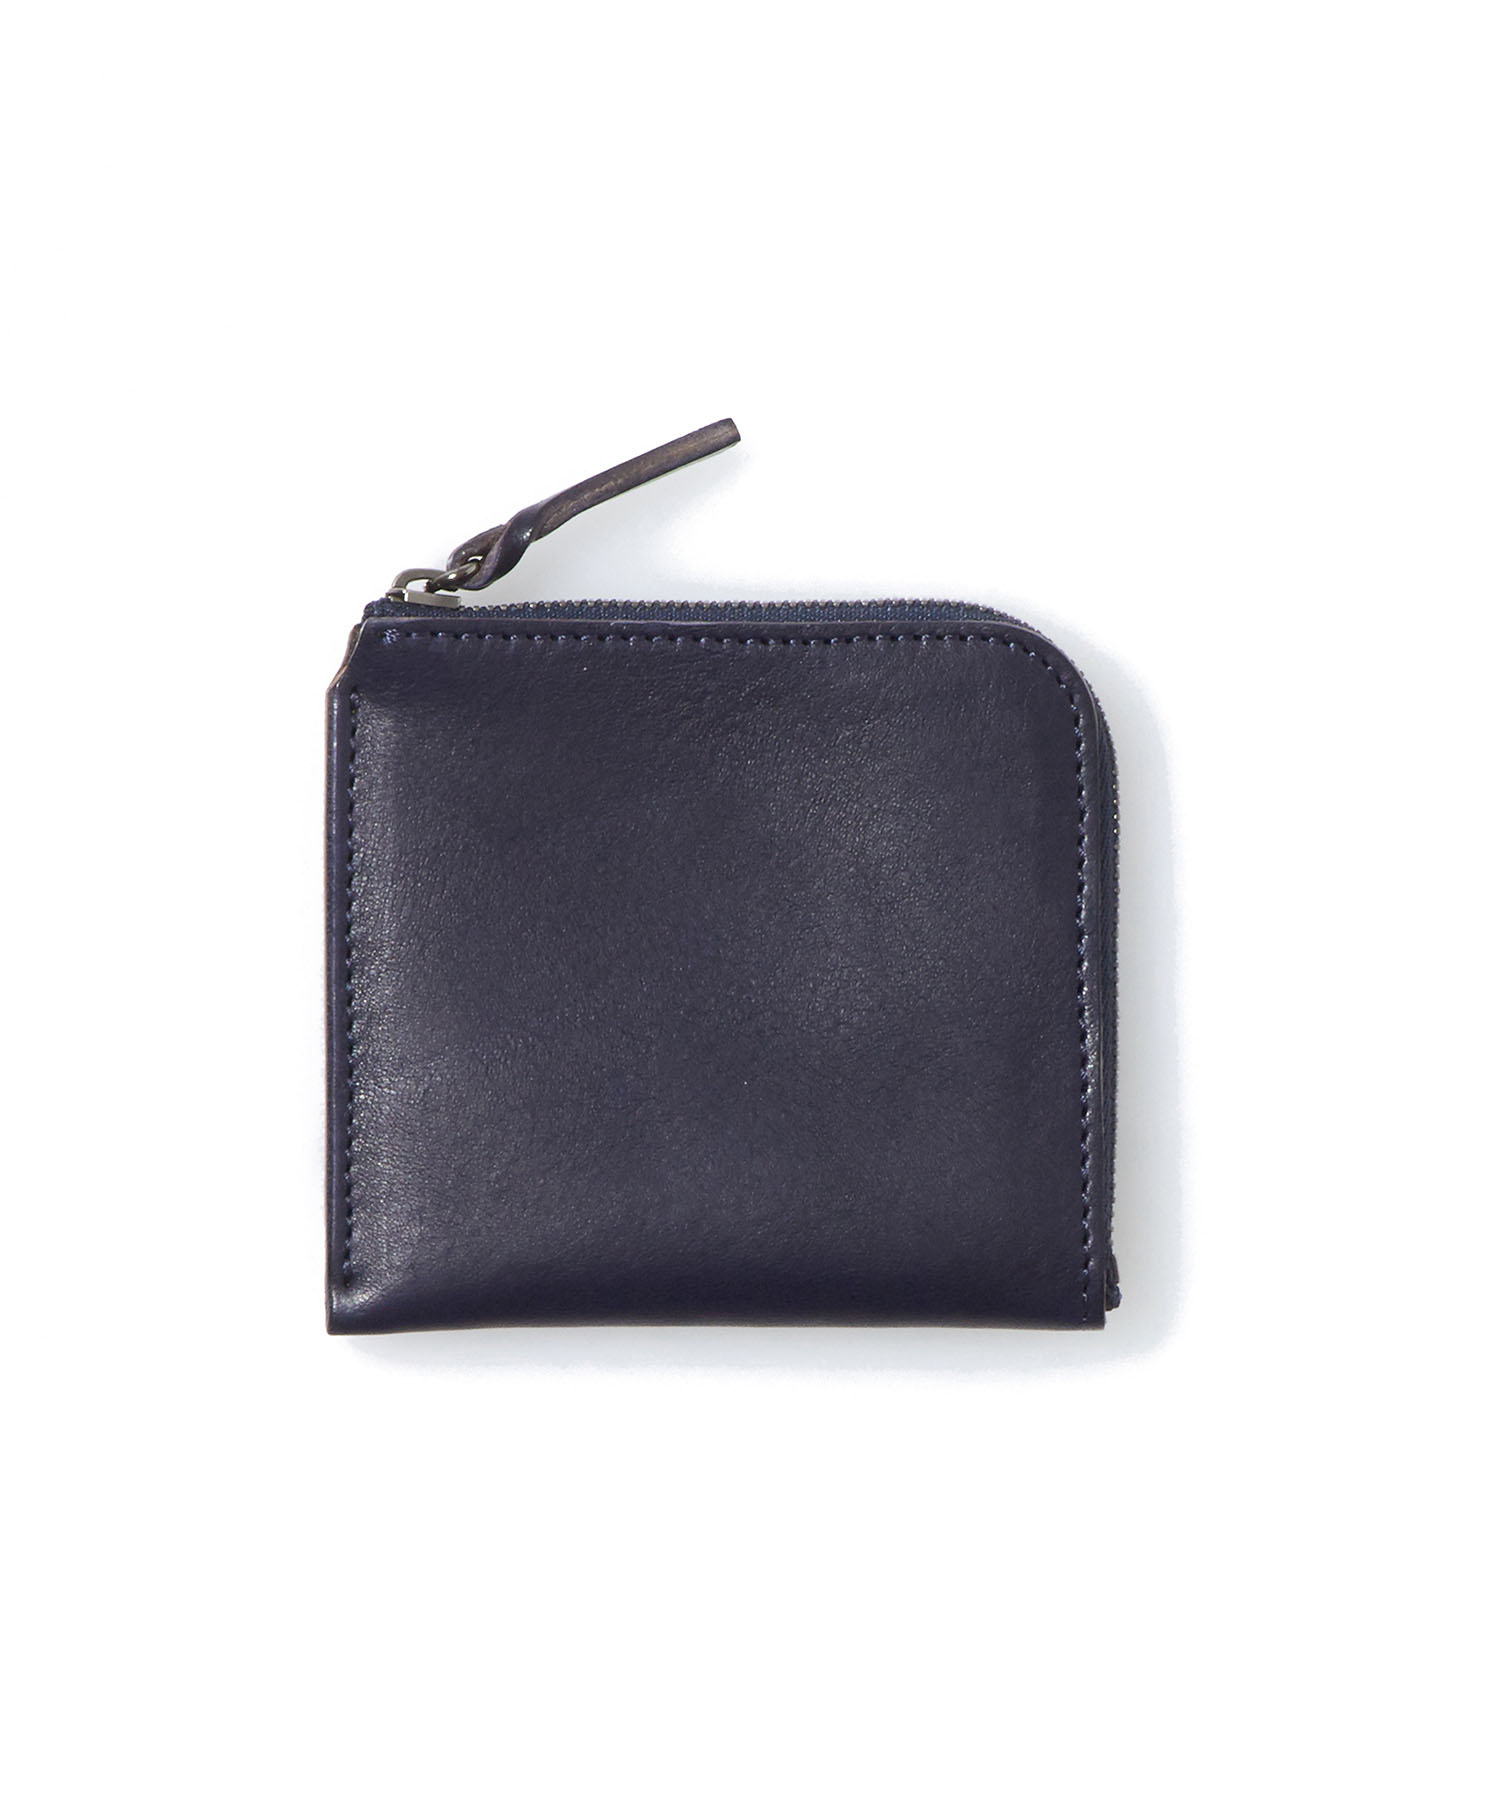 SandinistaSuperior Leather Compact 上質レザーＬ字型財布 送料無料 一部地域を除く Wallet 【ポイント10倍】